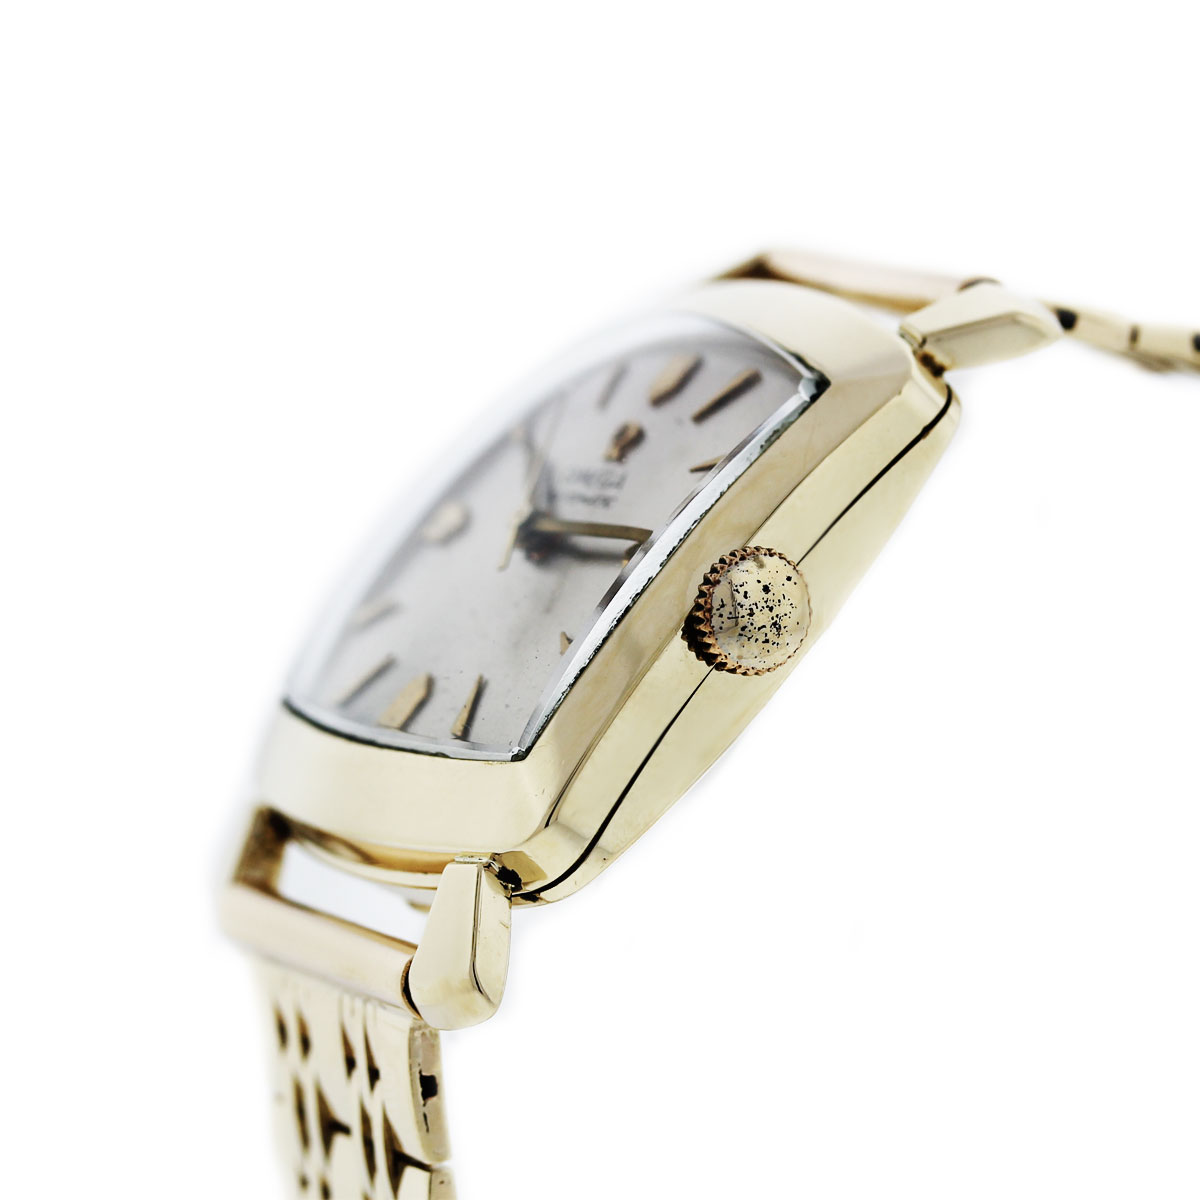 Vintage Omega Manual Wind Bracelet Watch, Snake Scale Pattern, All 14K Gold  Lv For Sale at 1stDibs